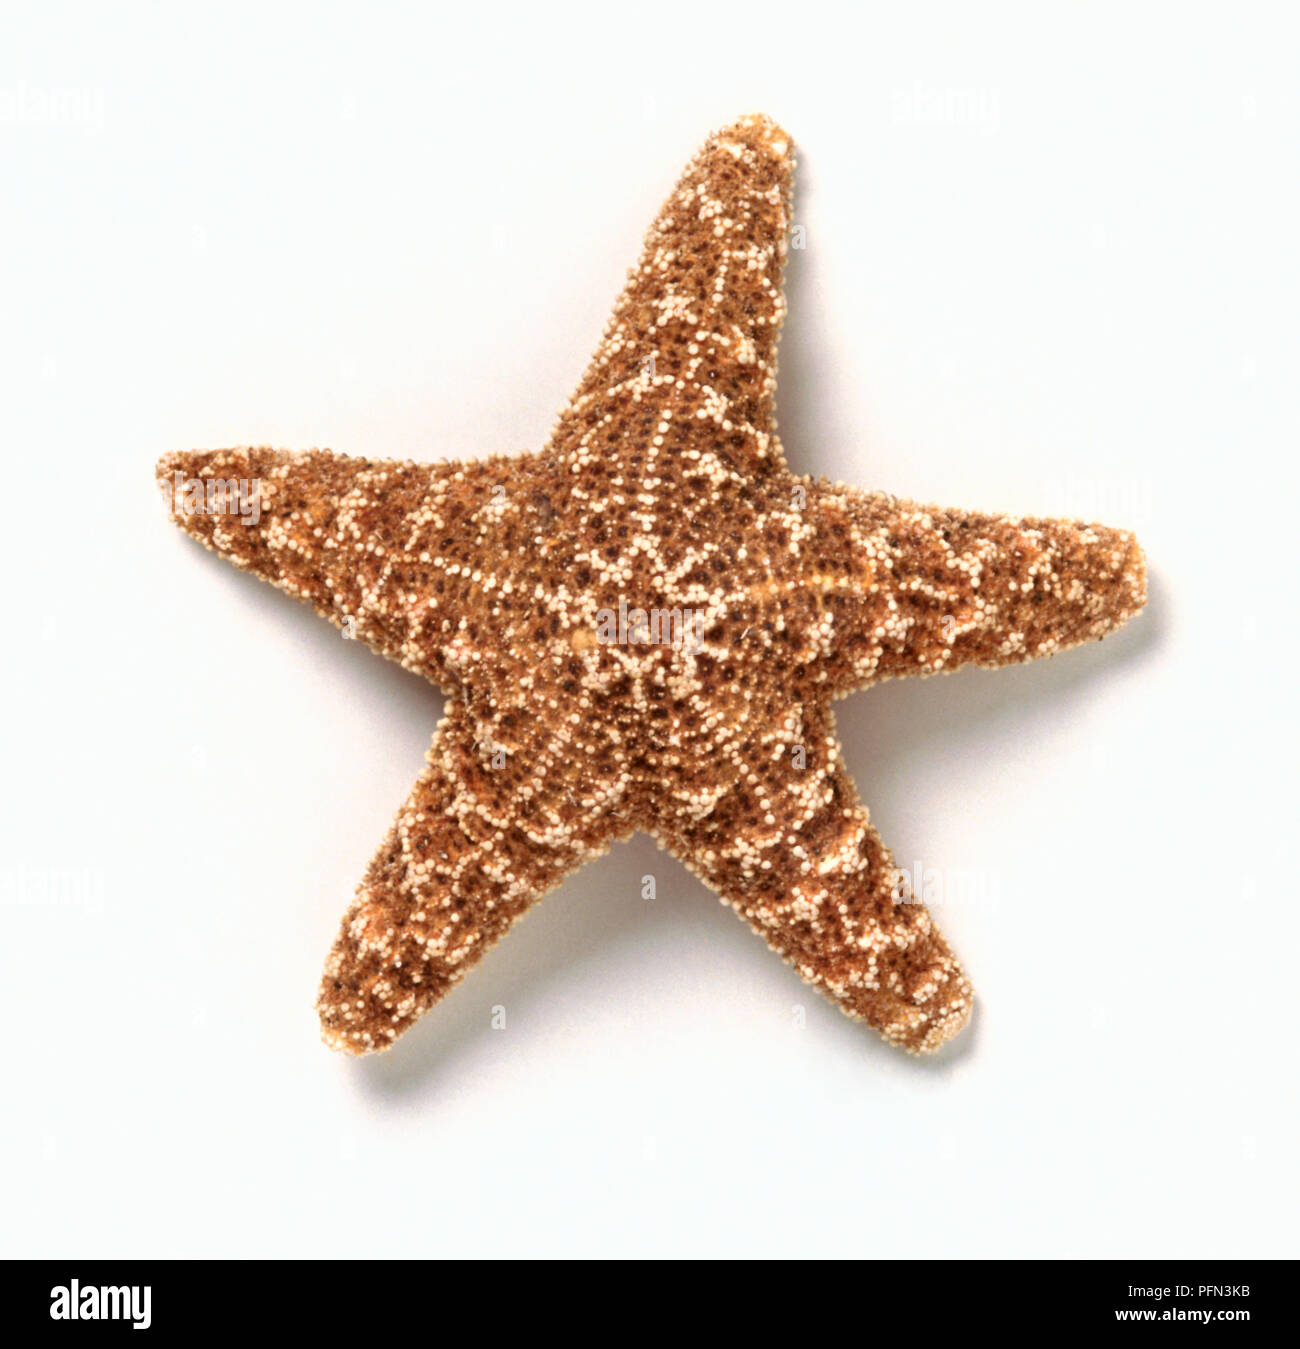 Raccolta di a forma di stella oggetti, inclusi Starfish (Asterias rubens), fette di Carambole o Star Fruit, confetti, caramelle, cookie cutter e Bacchetta magica Foto Stock